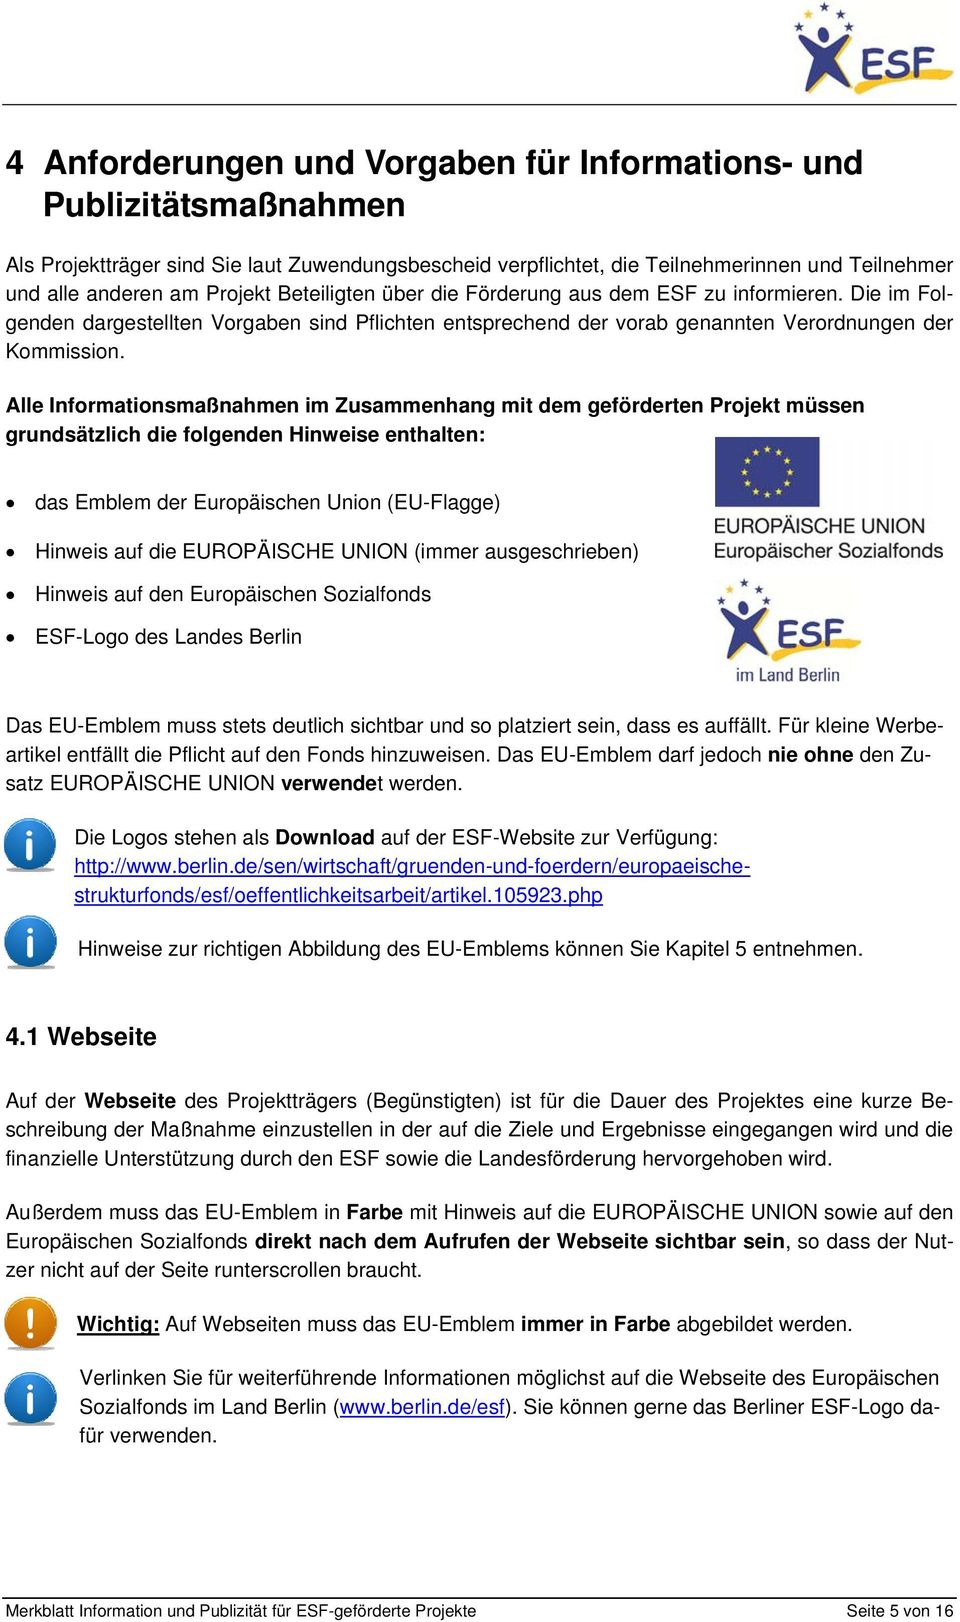 Alle Informationsmaßnahmen im Zusammenhang mit dem geförderten Projekt müssen grundsätzlich die folgenden Hinweise enthalten: das Emblem der Europäischen Union (EU-Flagge) Hinweis auf die EUROPÄISCHE